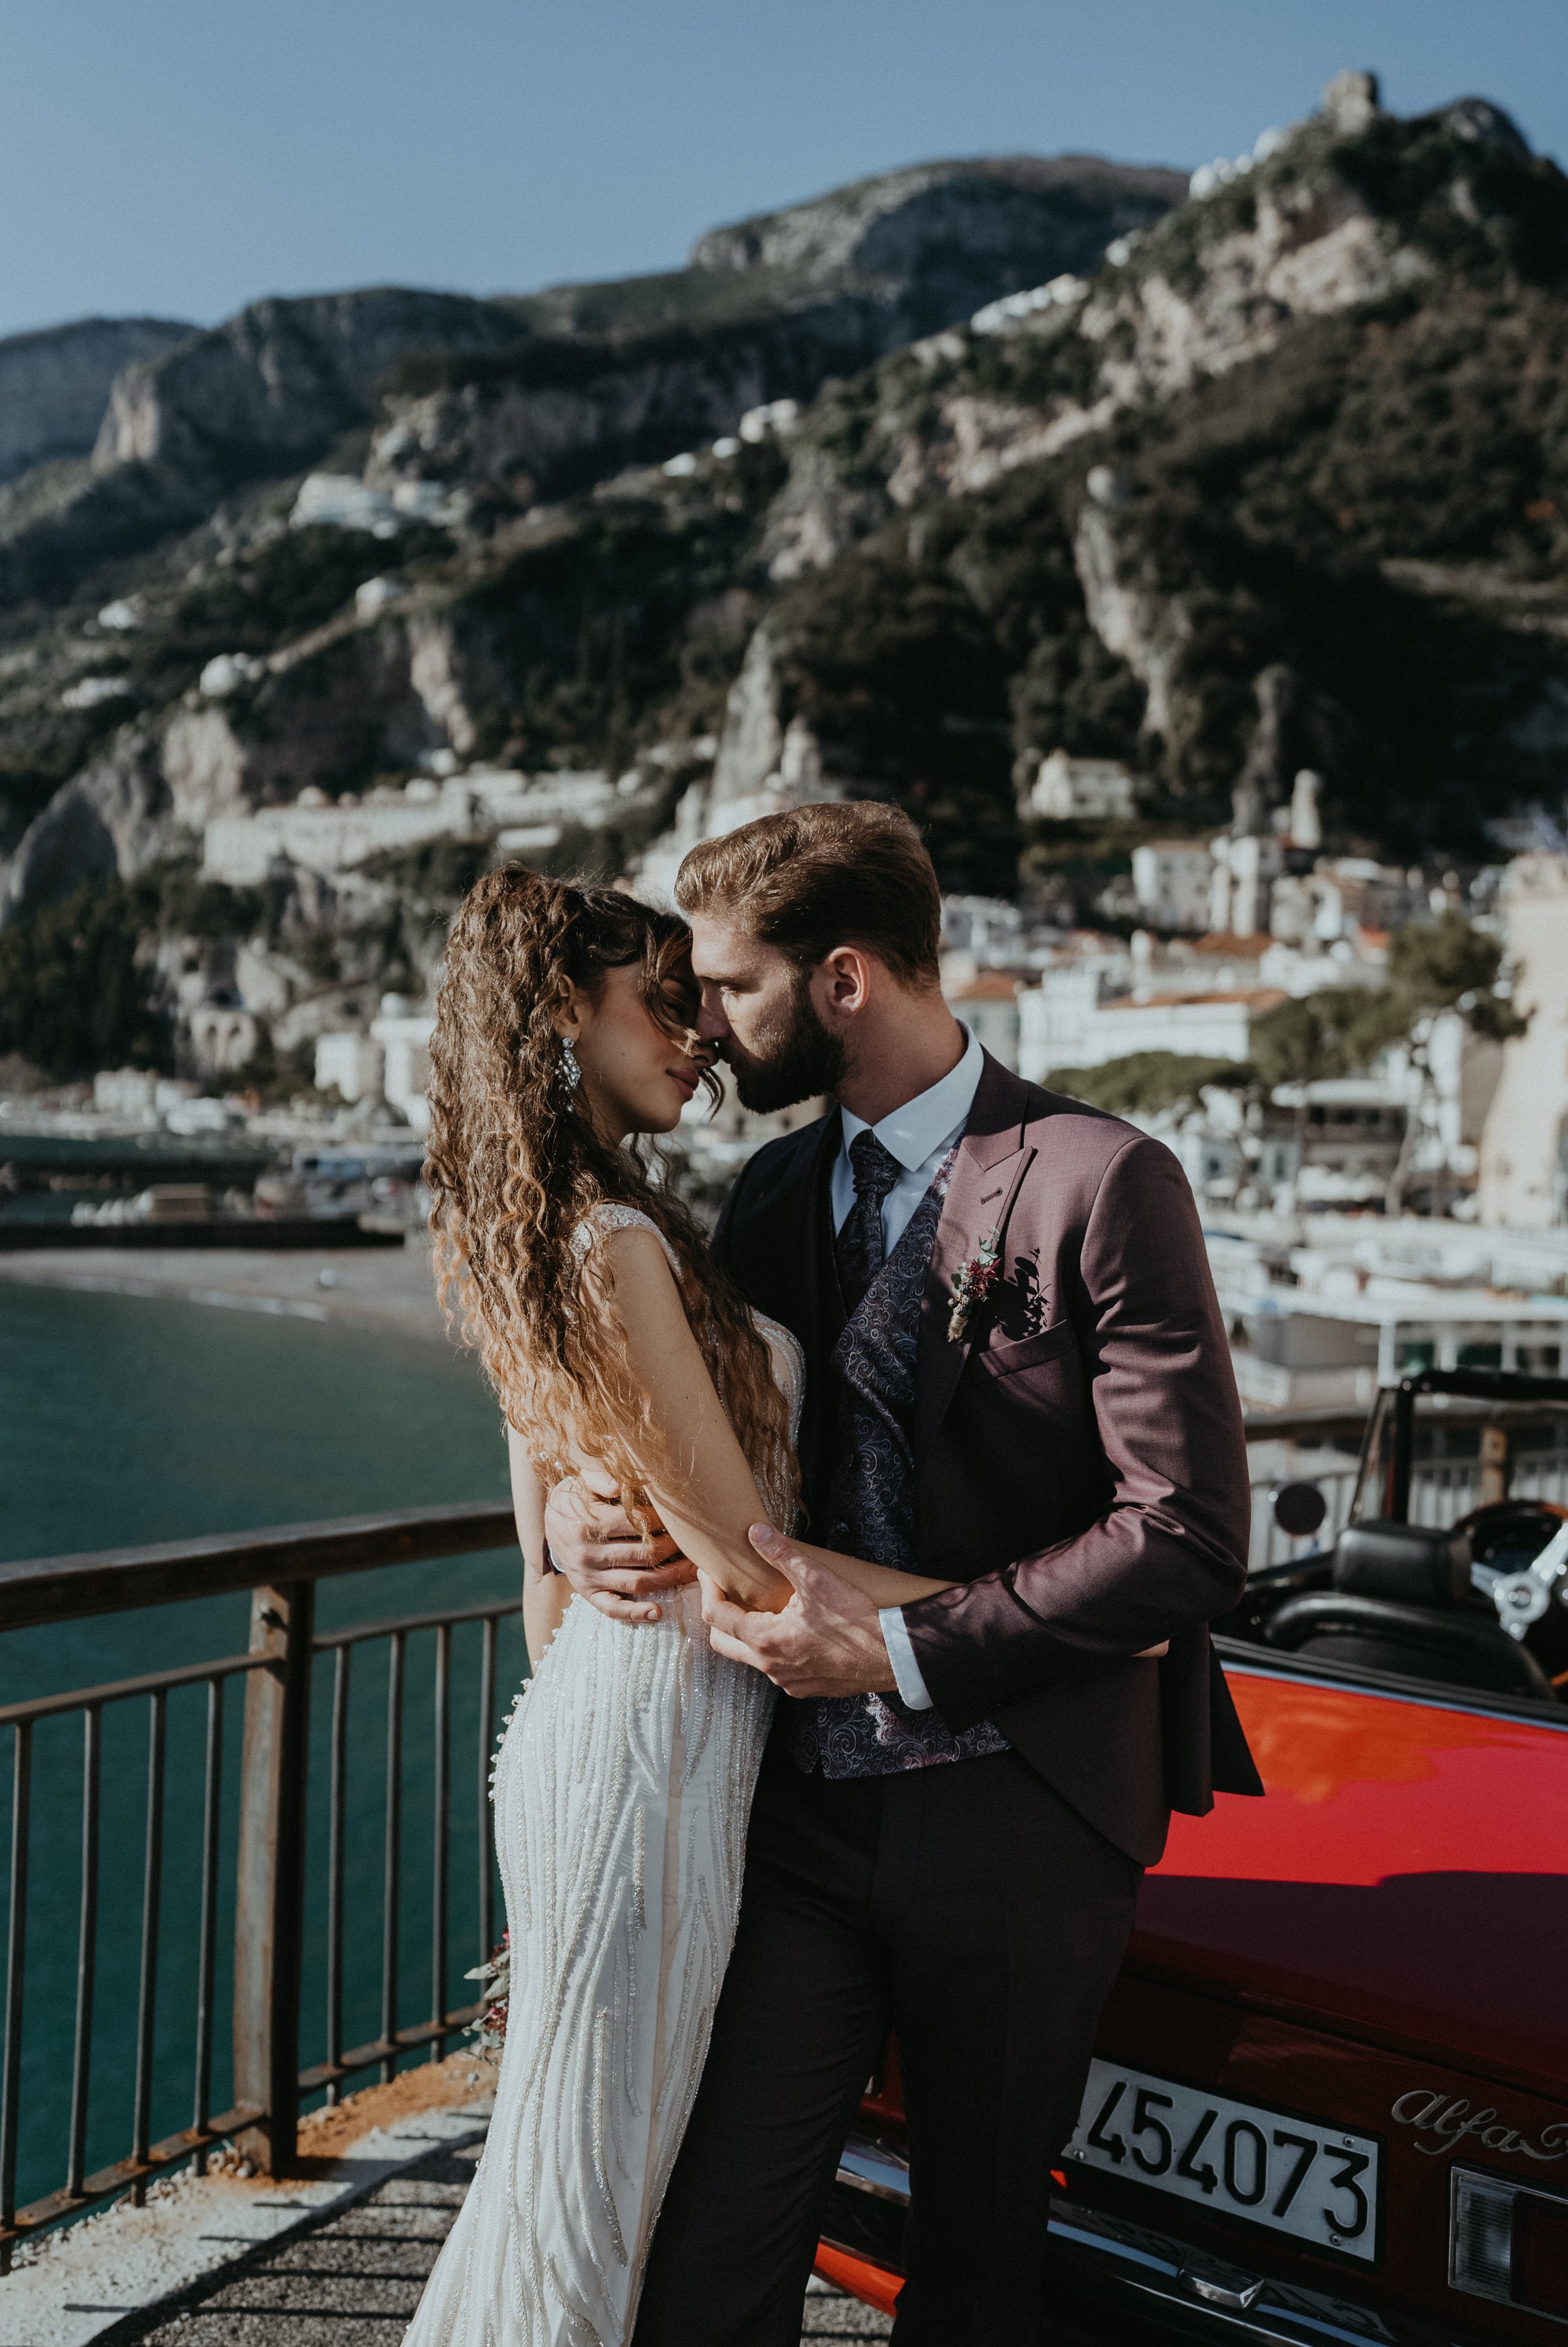  Amalfi and Positano Luxury Wedding Photographer and Videographer 